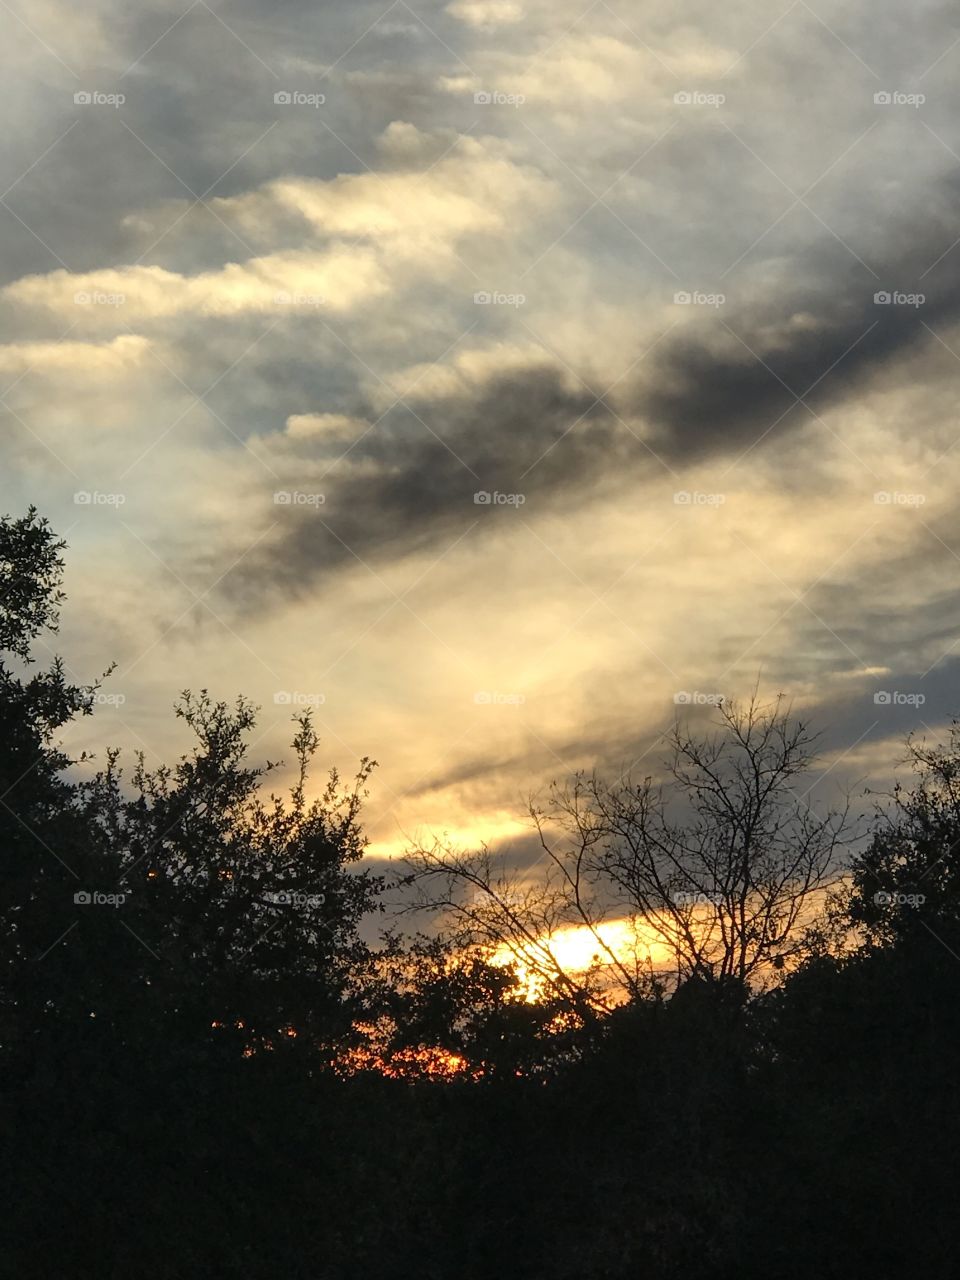 Texas winter sunset